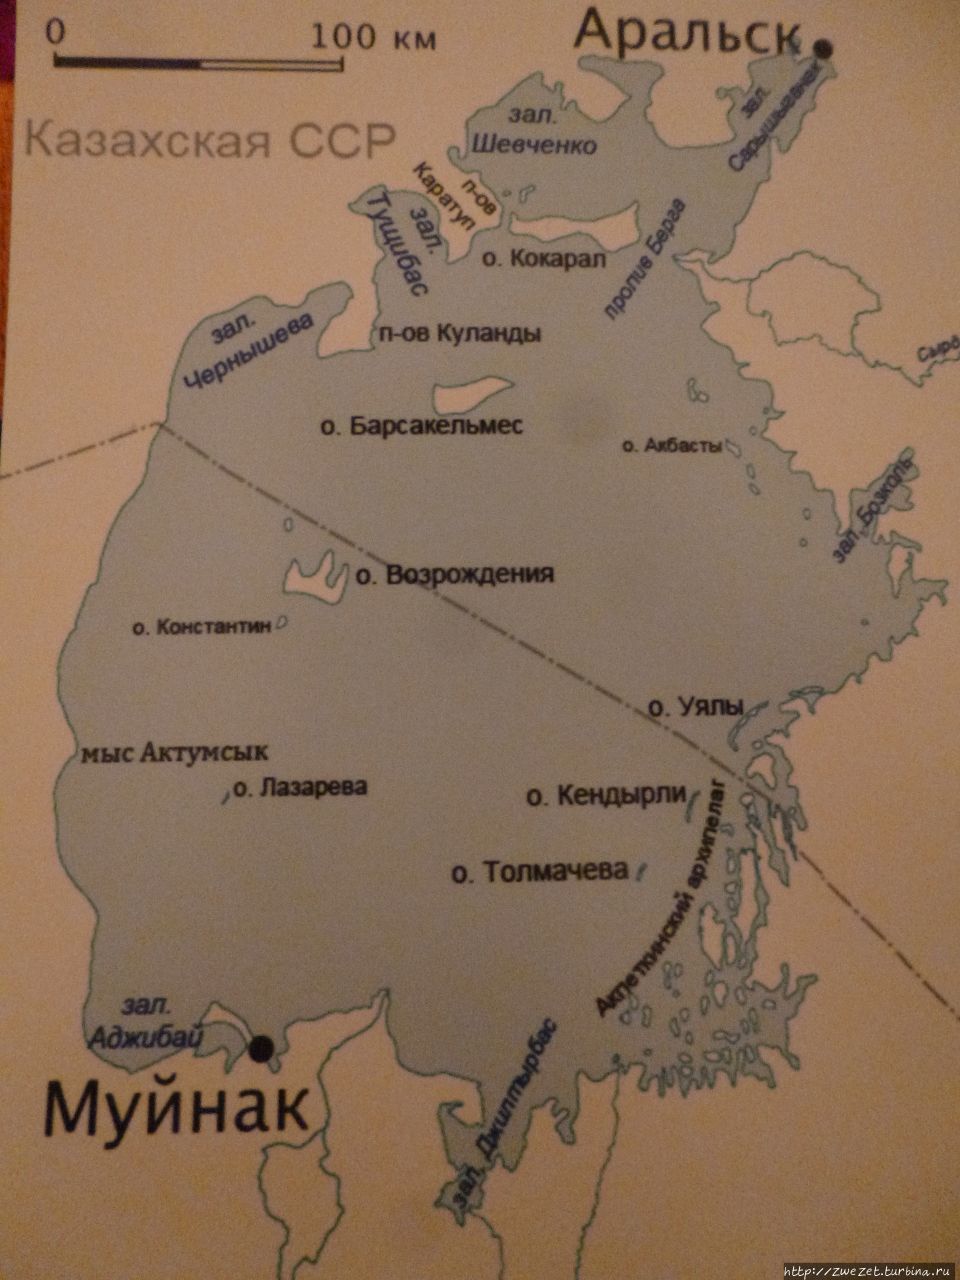 Аральское море до 1961 г 